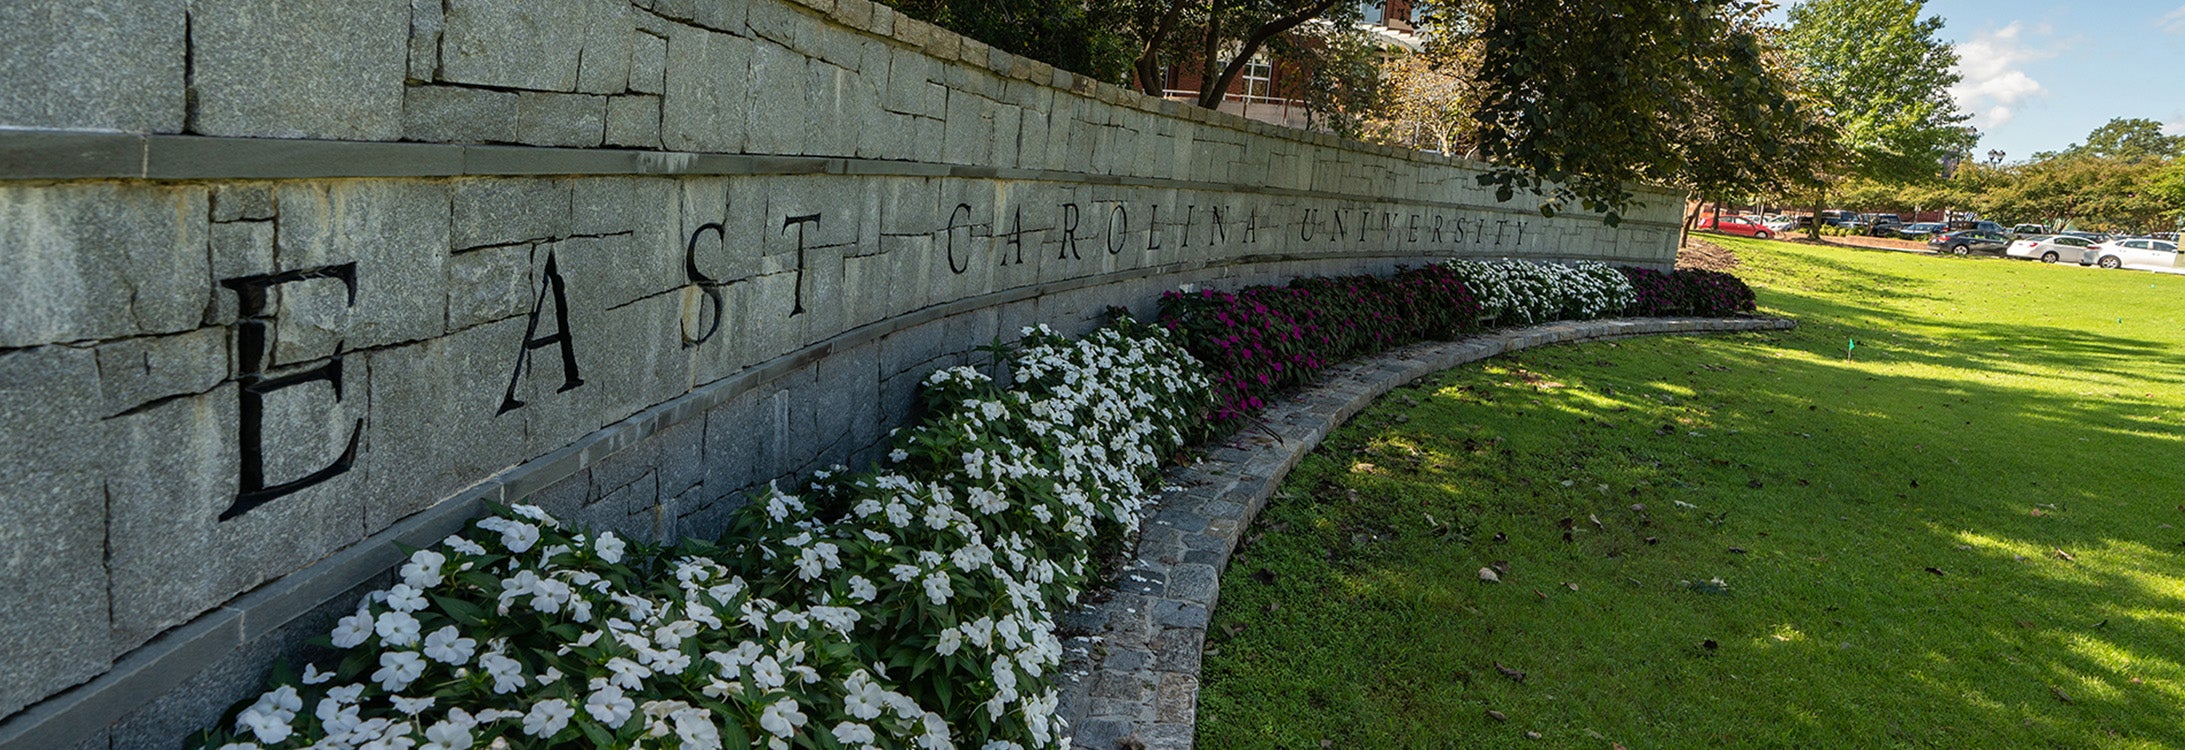 Entrance to East Carolina Universityh